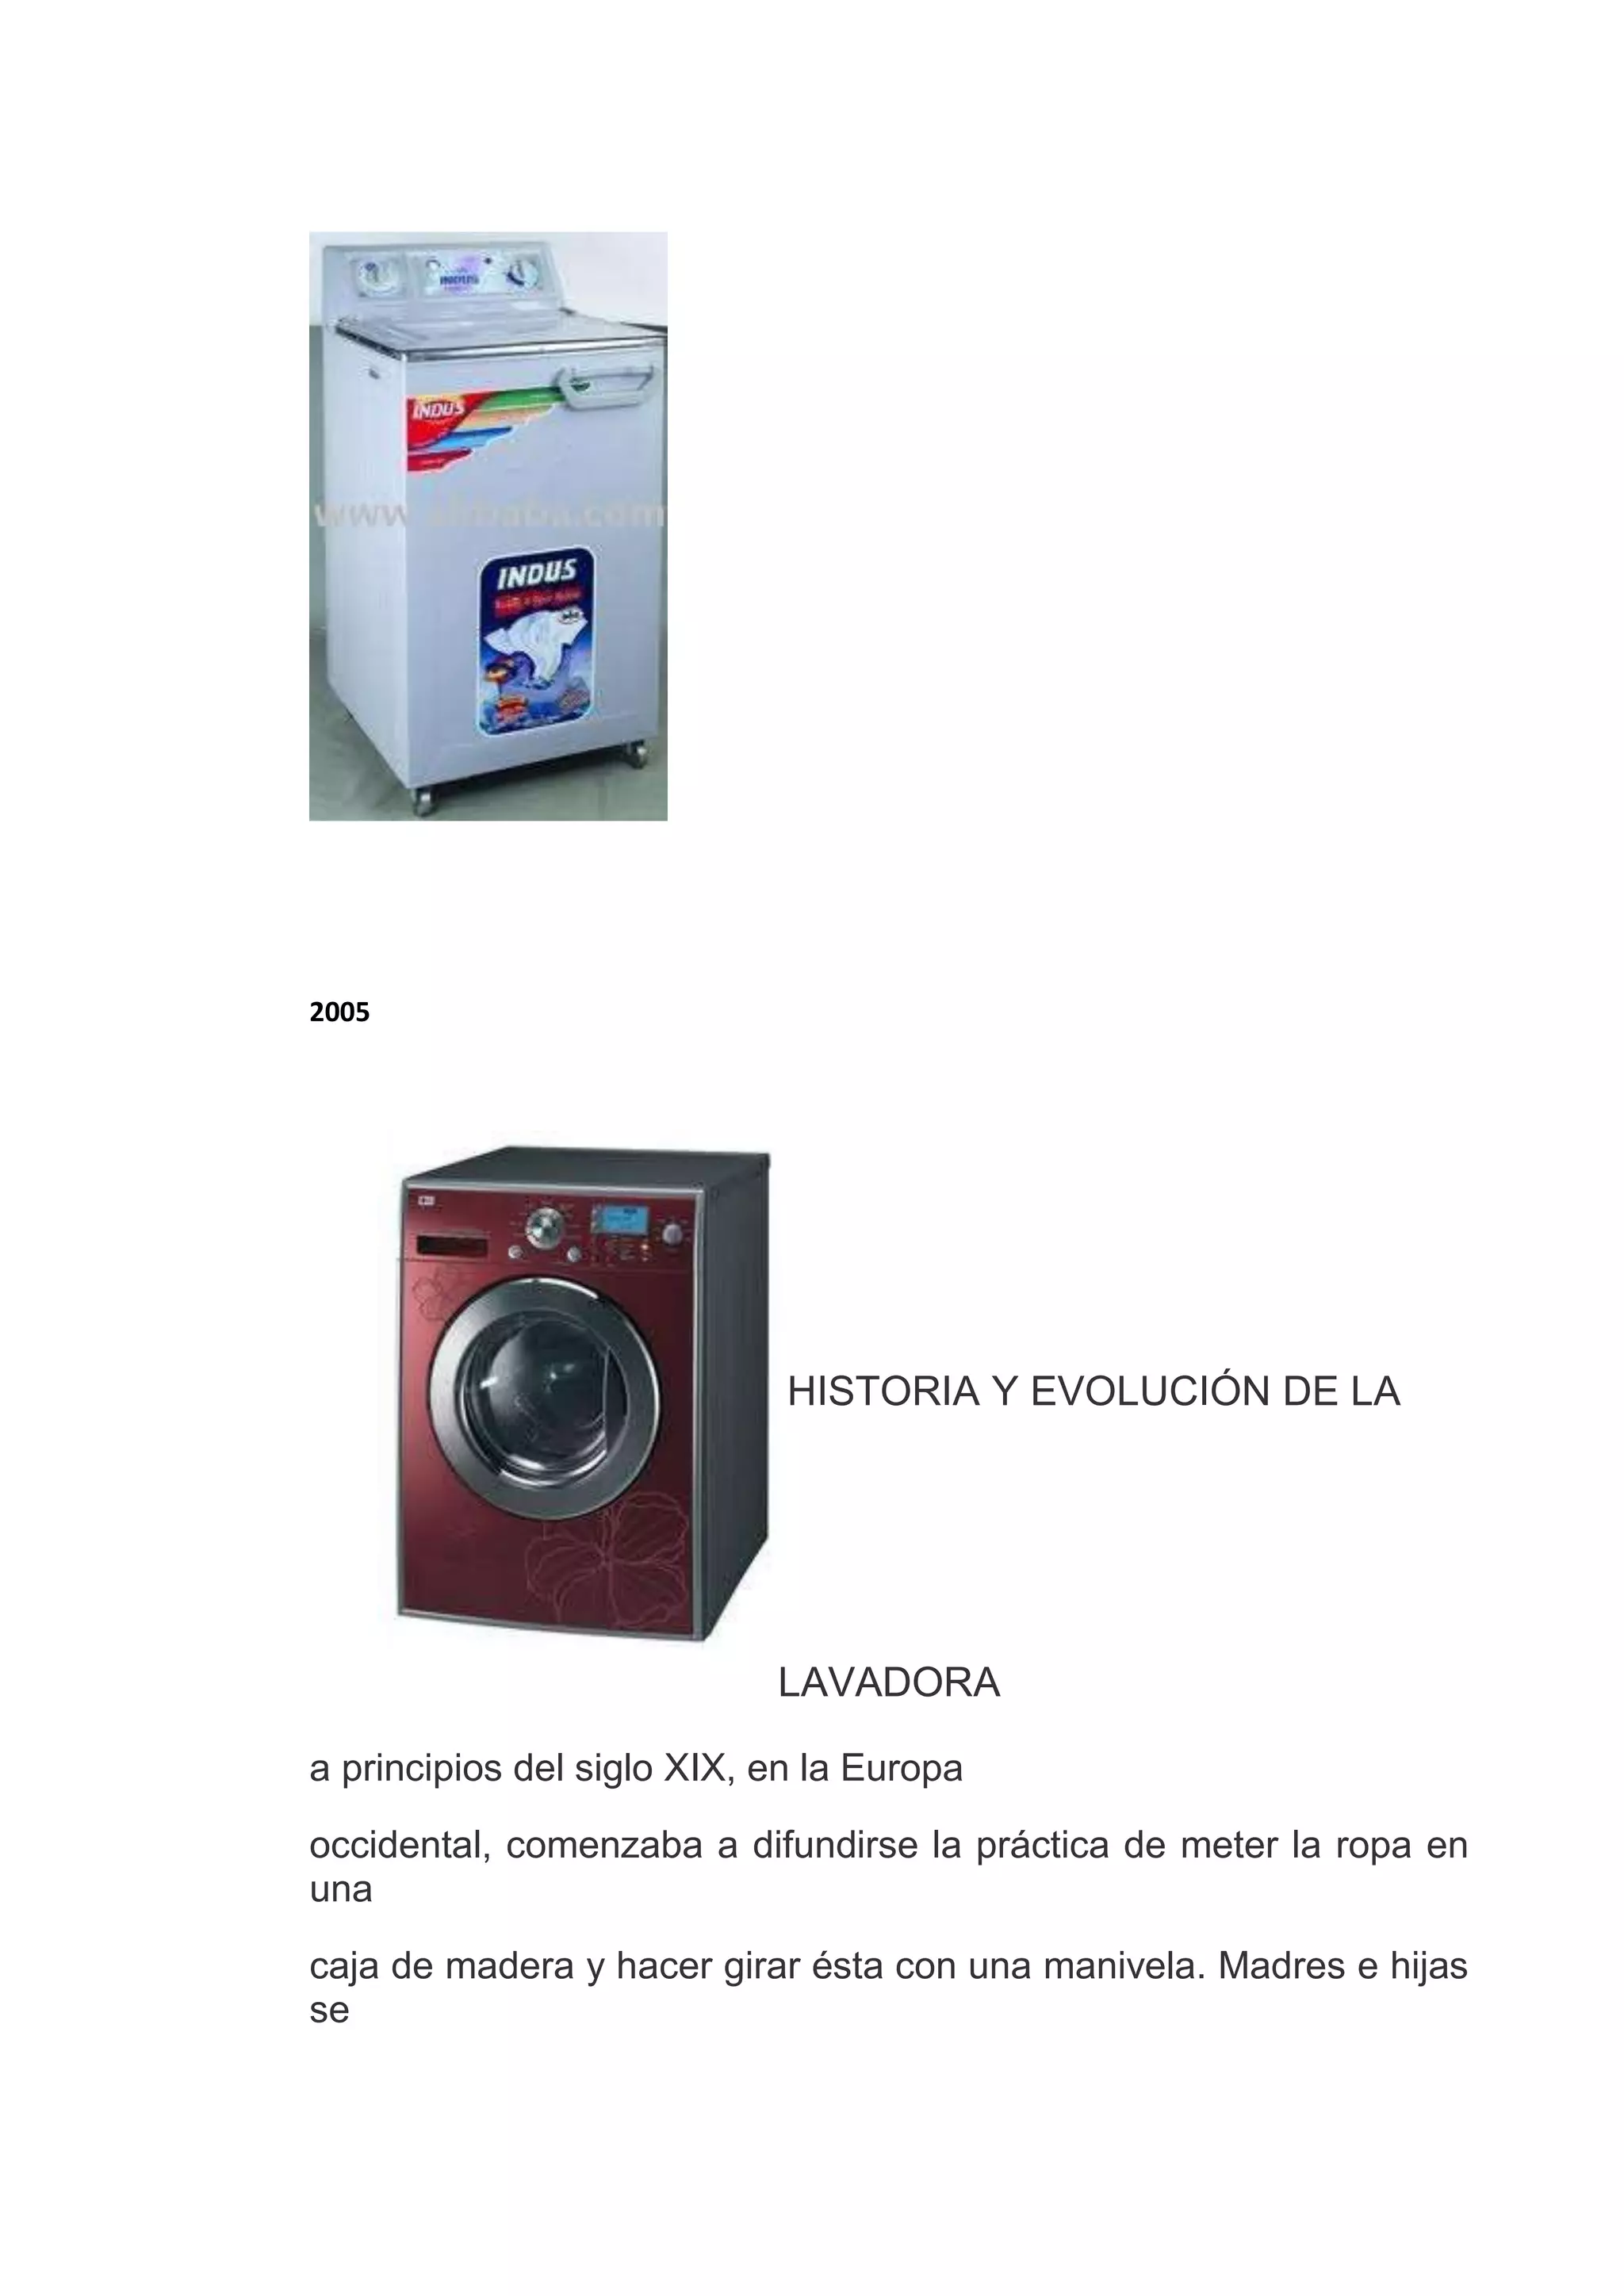 Historia y evolución de la lavadora